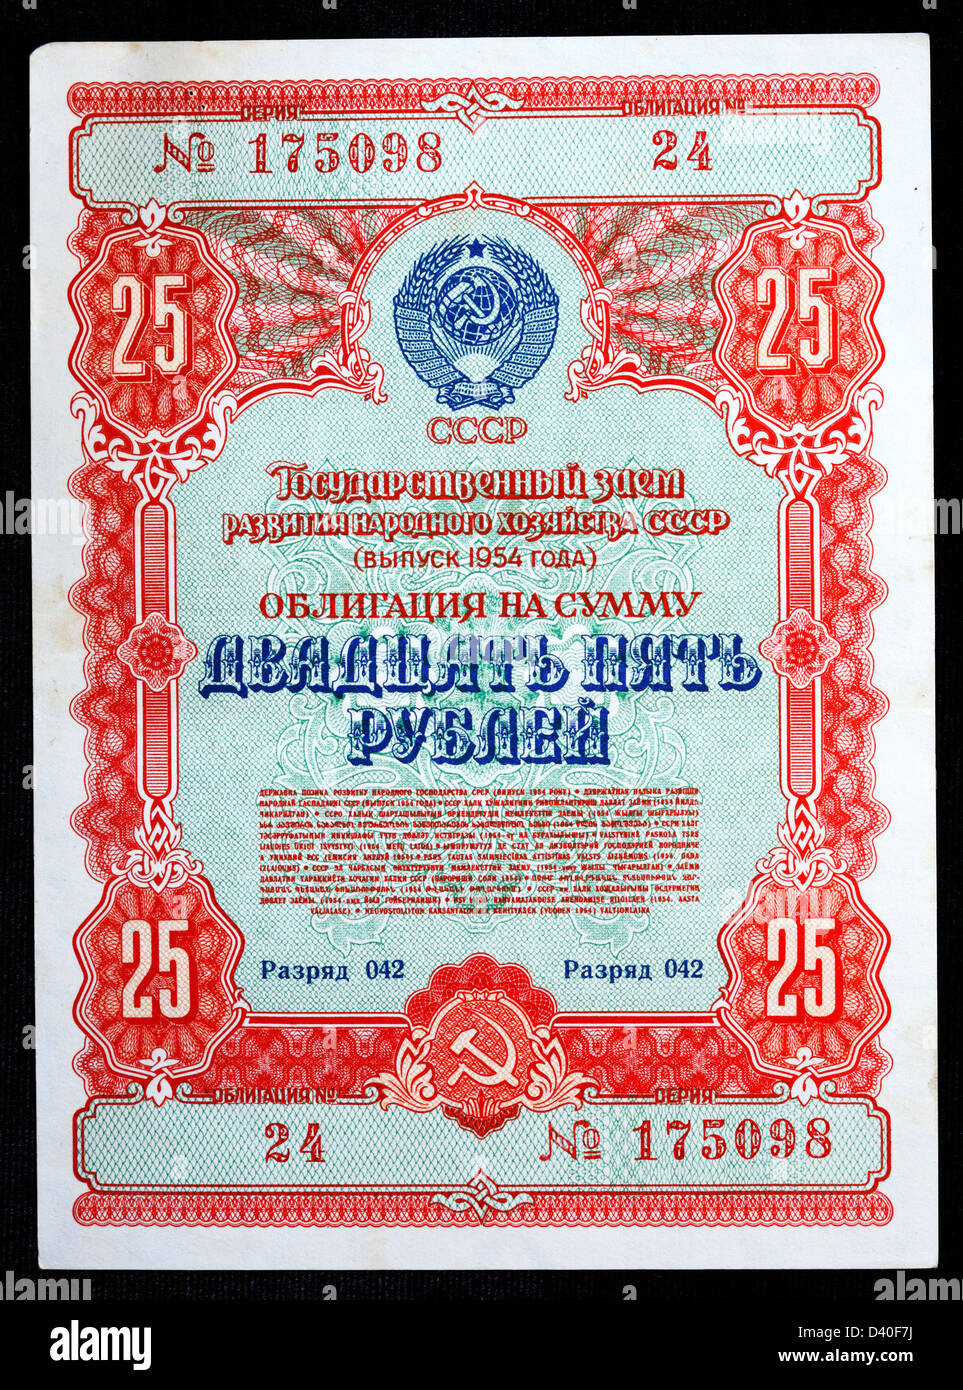 25 Rubles public bond banknote, Russia, 1954 Stock Photo